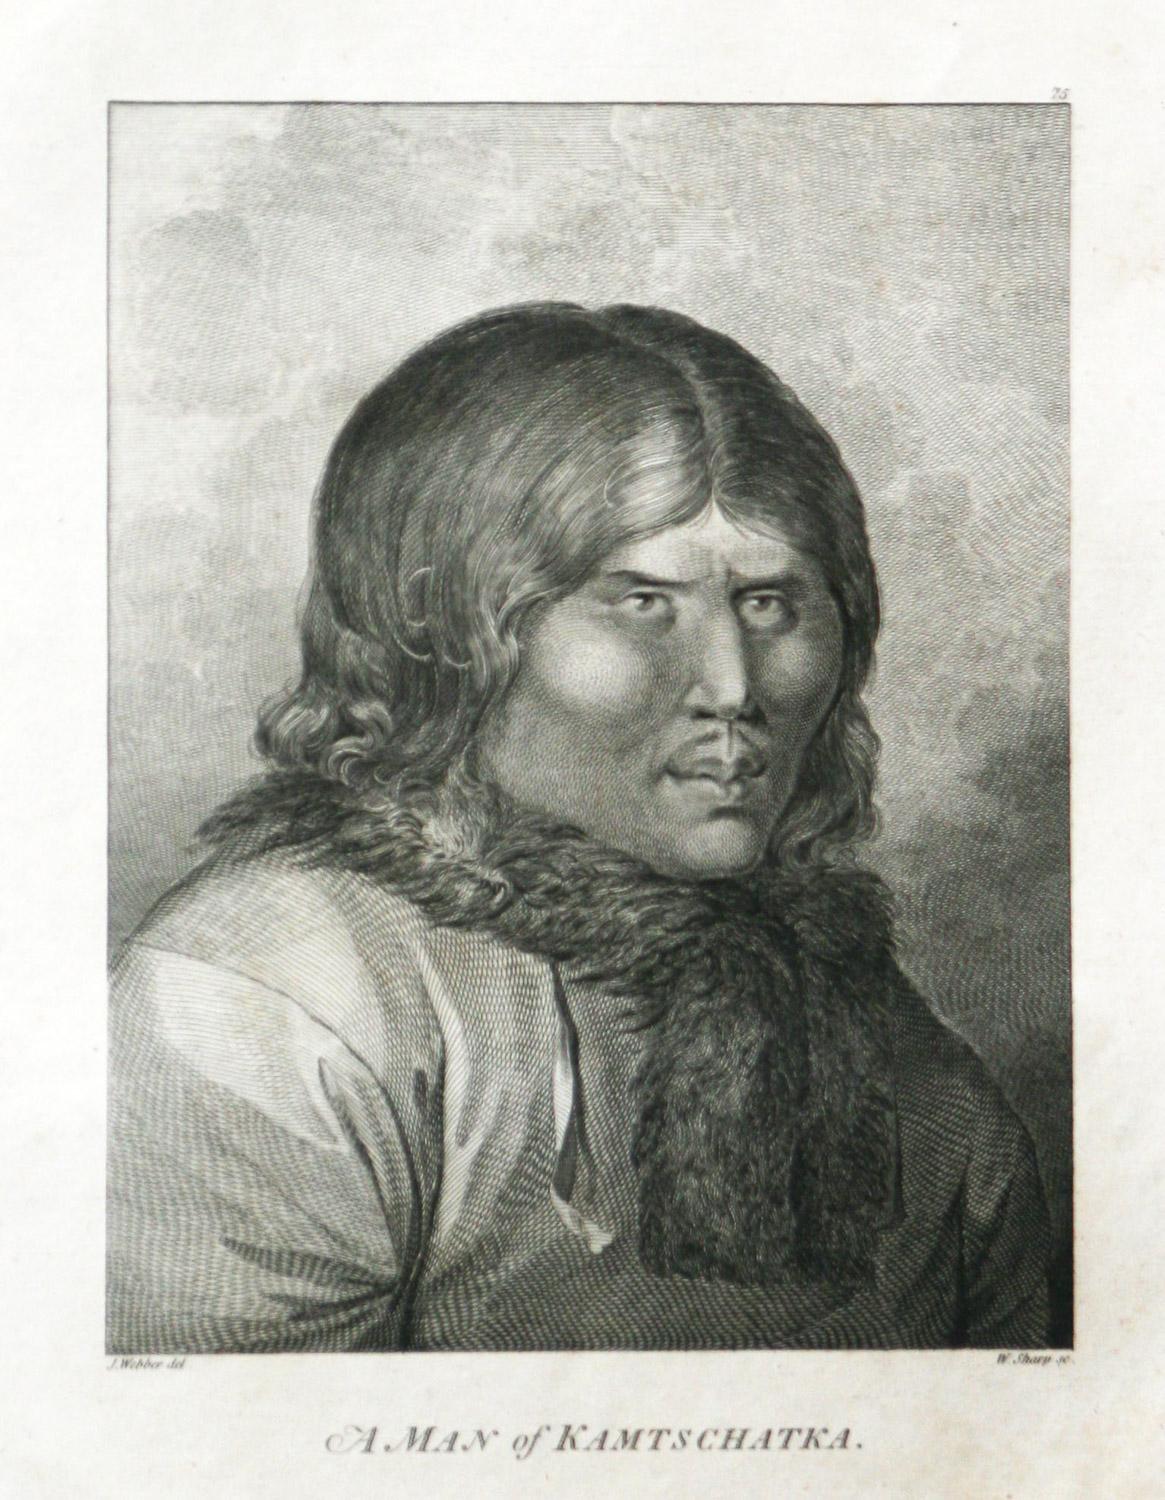 Ein Mann von Kamtschatka (Russland) stammt aus der ersten Ausgabe des Atlas von 1784, der Capt. James Cook und König; Dritte und letzte Reise von Kapitän James Cook. John Webber (1752-1793) war der offizielle Künstler für die dritte Reise von